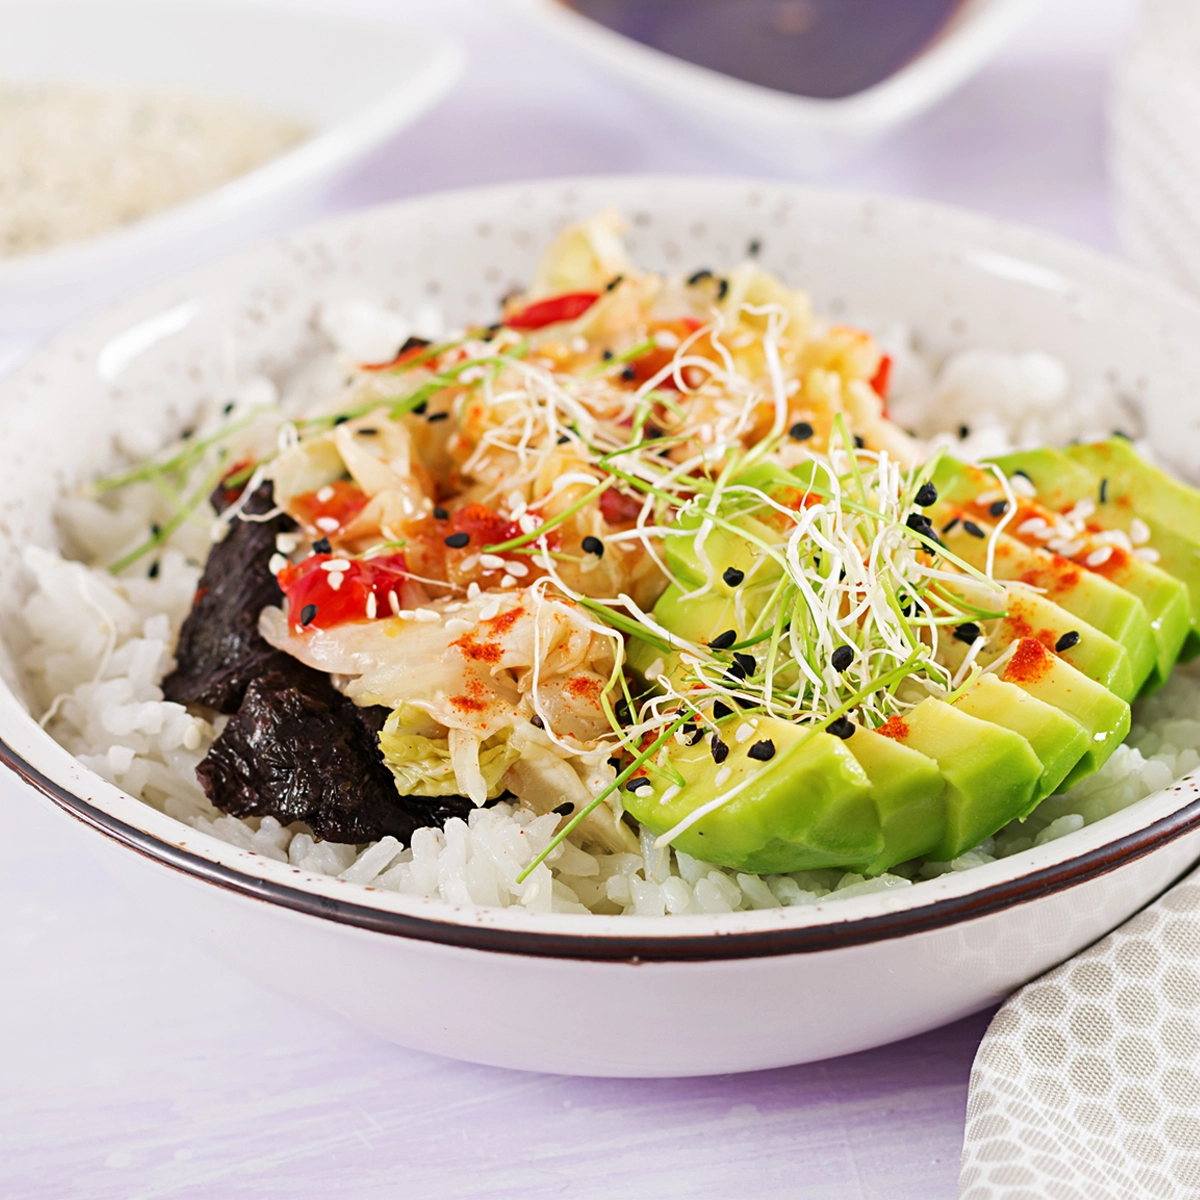 kimchi-rice-bowl-recipe-with-vegan-ingredients